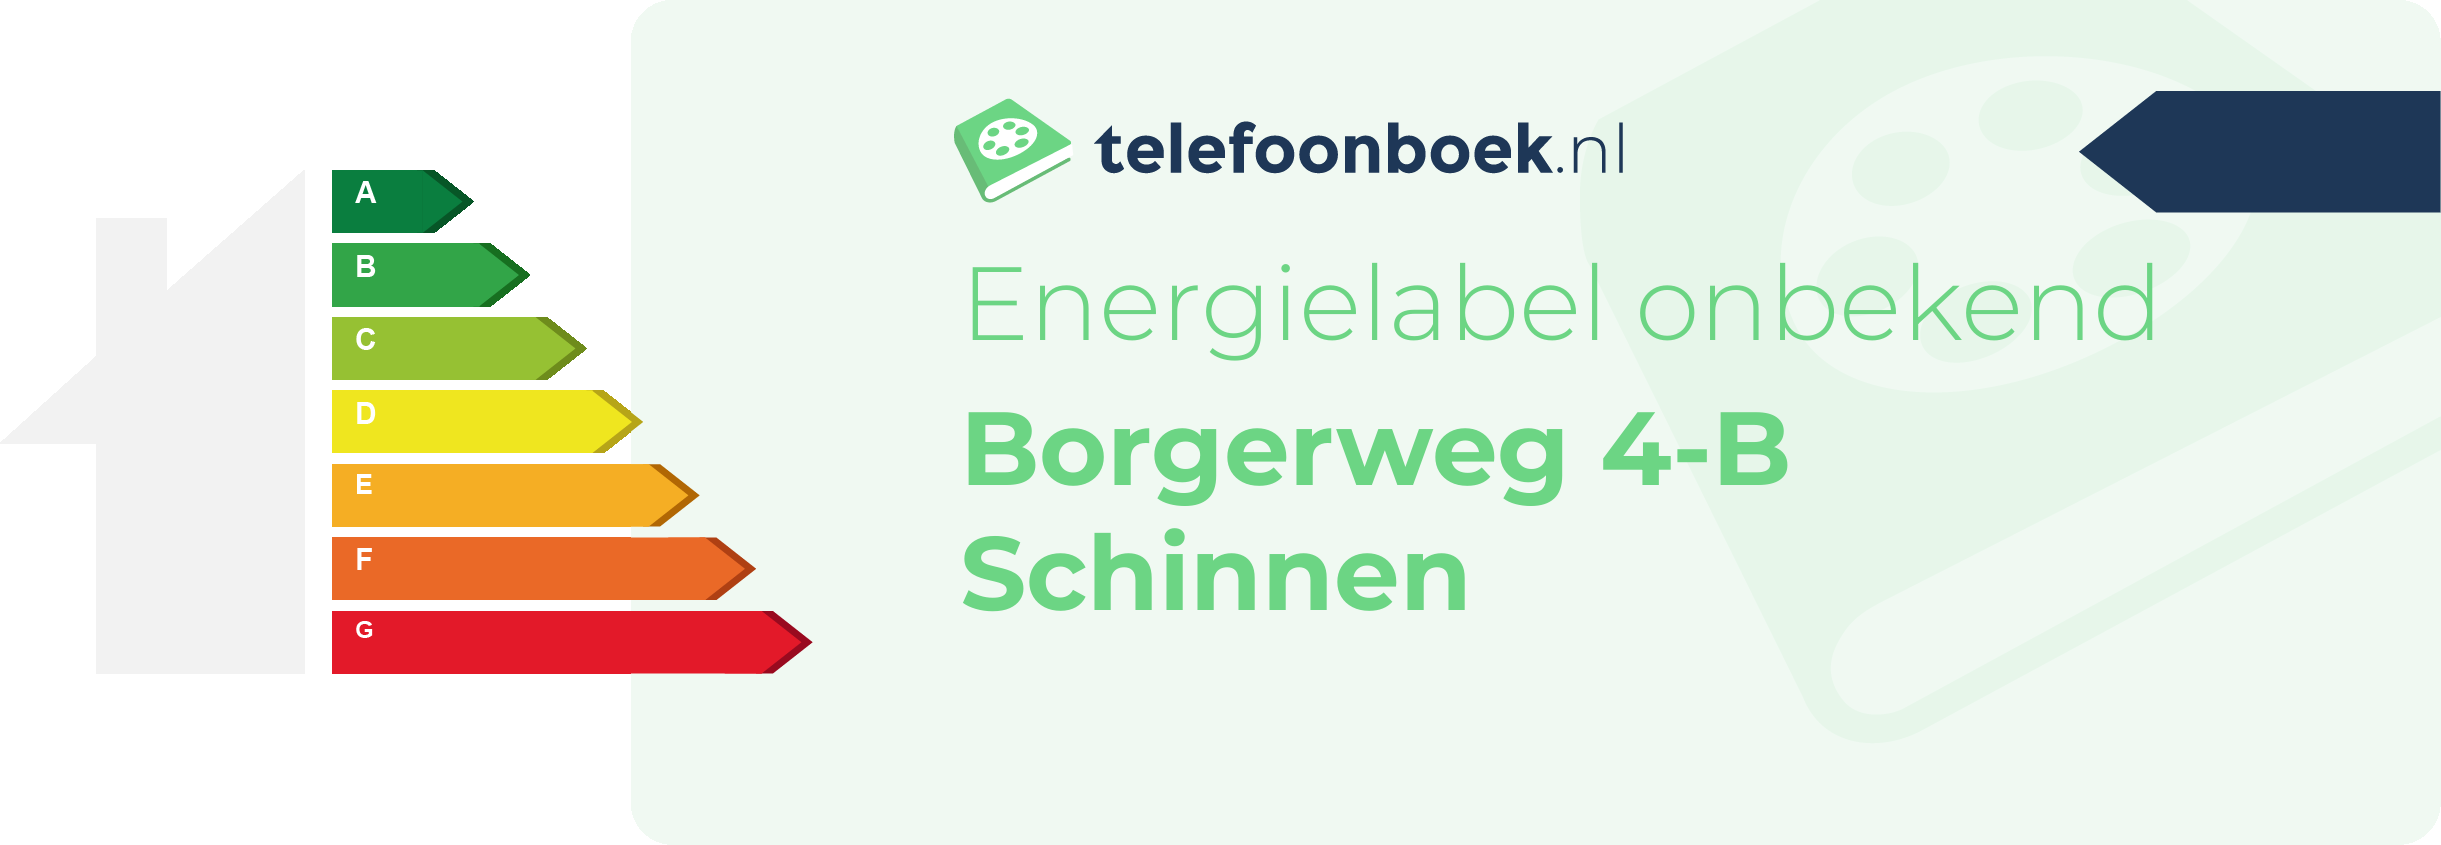 Energielabel Borgerweg 4-B Schinnen